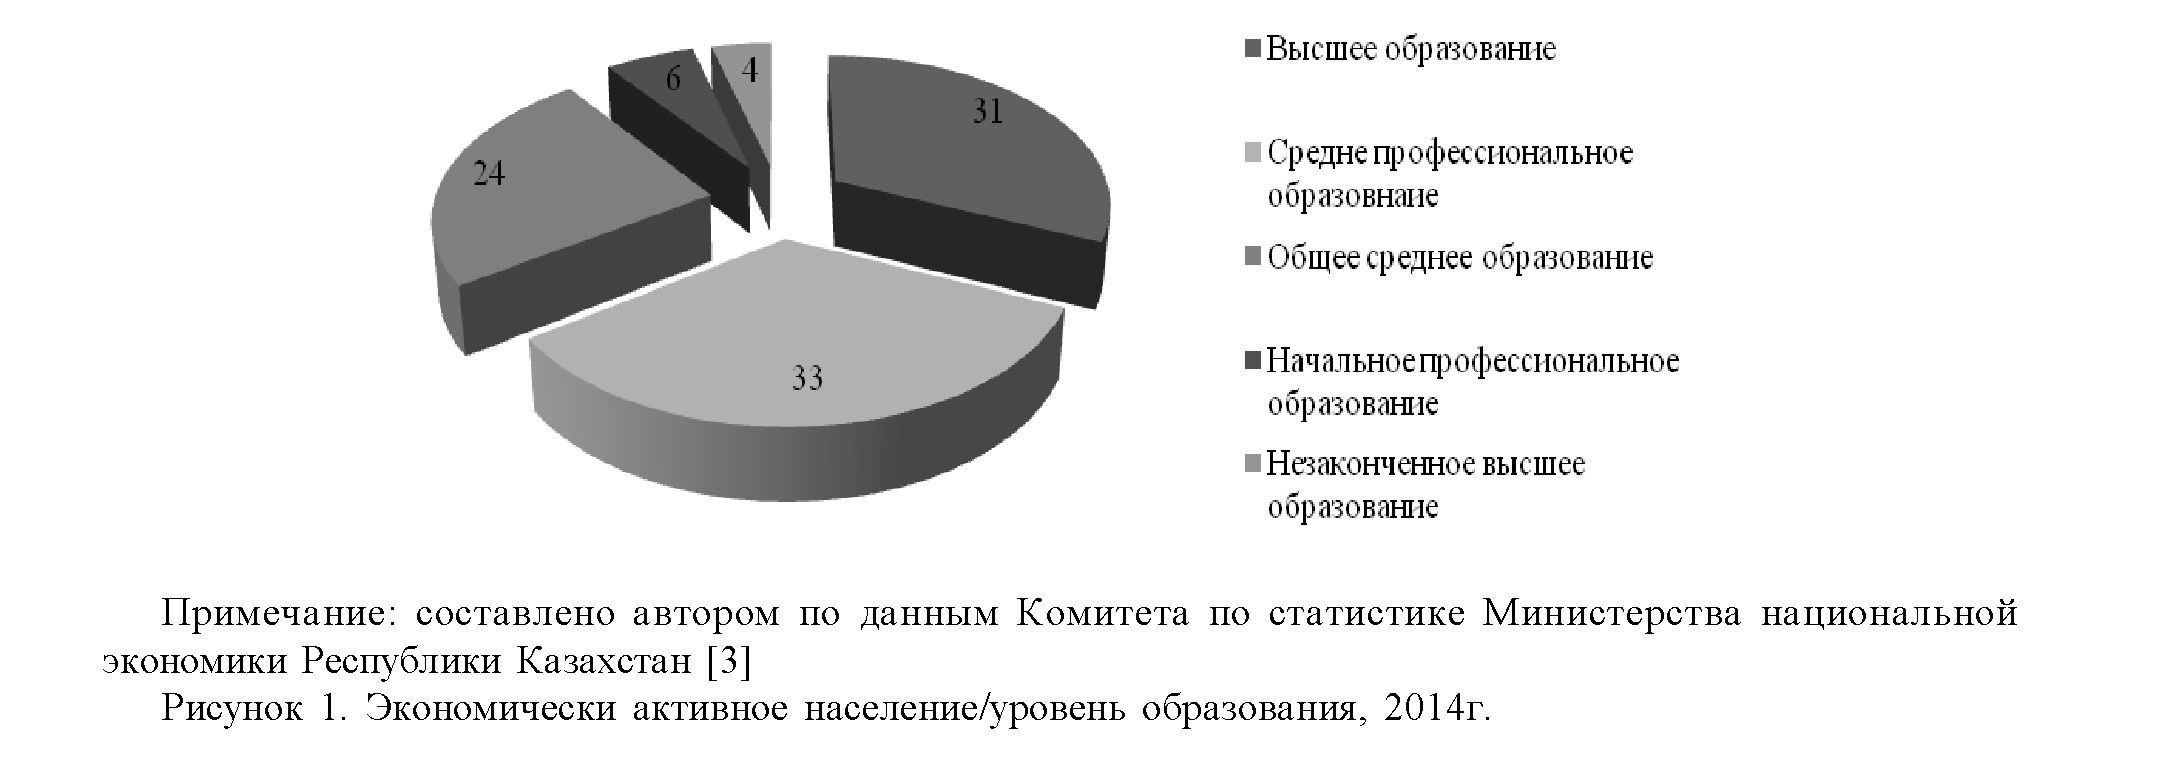 Тенденции бюджетного финансирования образования в республике Казахстан